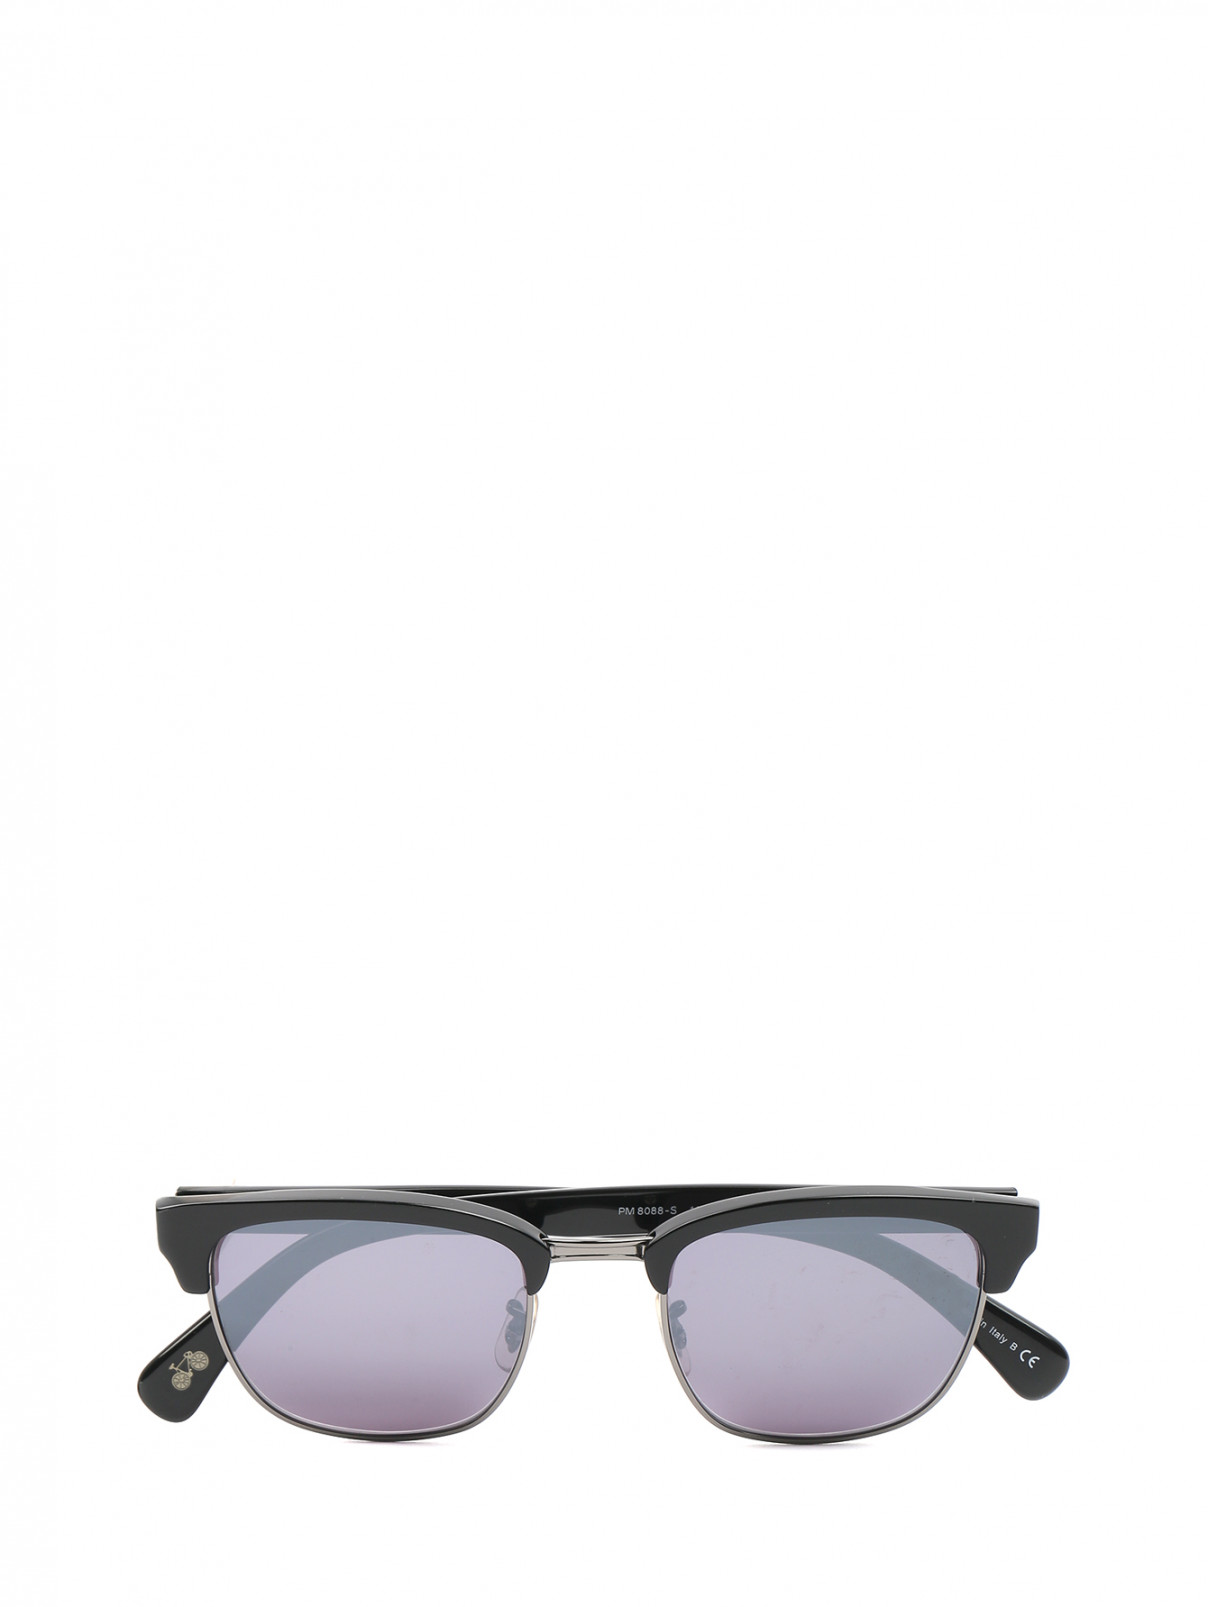 Cолнцезащитные очки в оправе из пластика и металла Paul Smith  –  Общий вид  – Цвет:  Черный